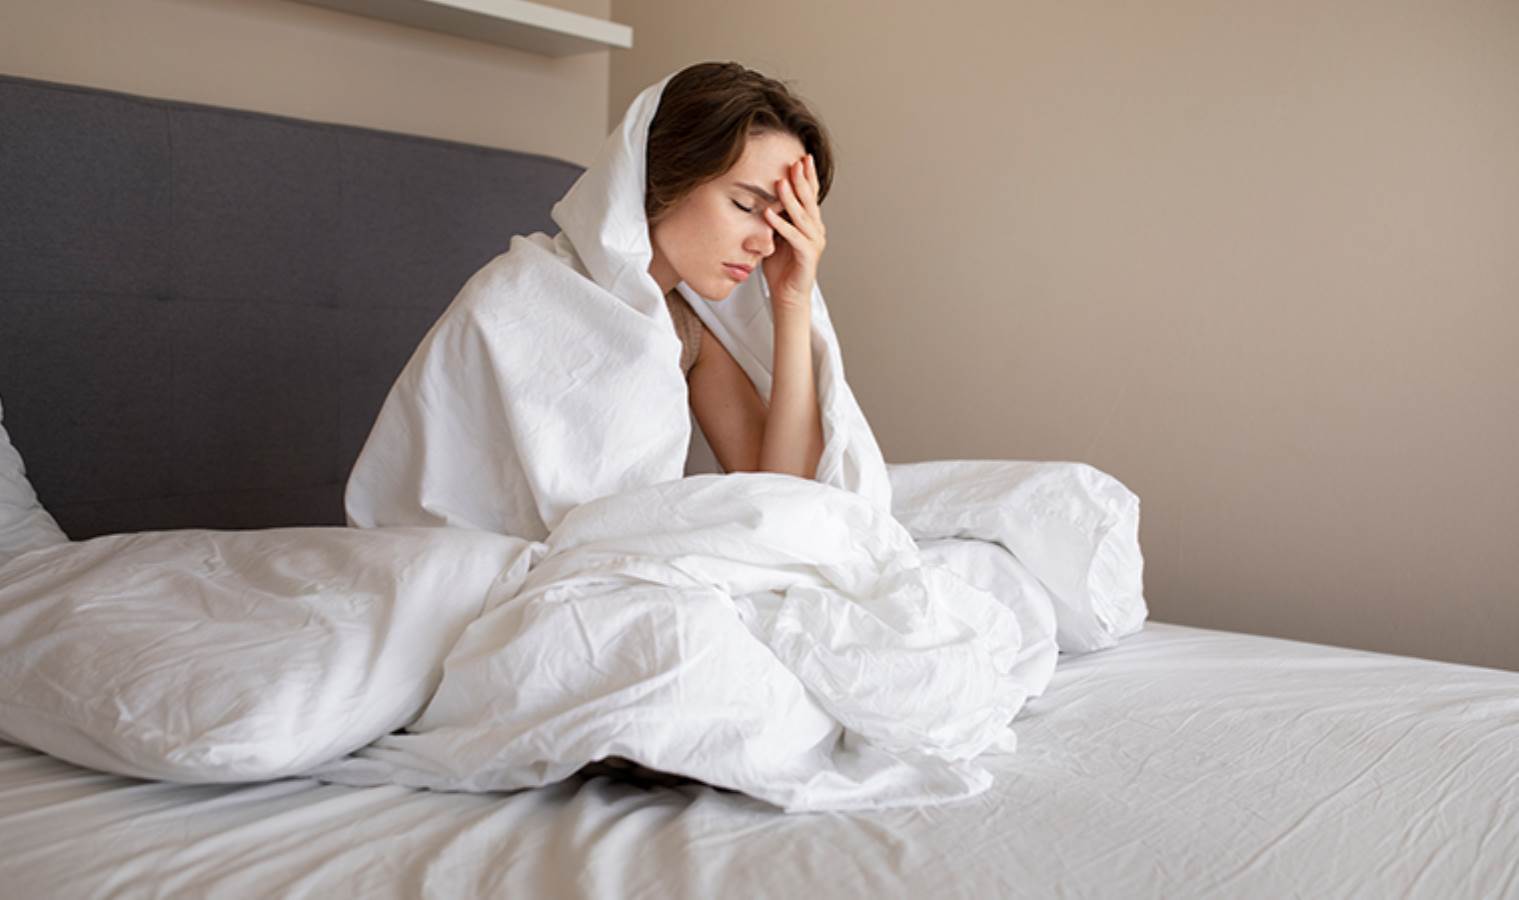 Uzmanlar uyumak için ideal oda sıcaklığını açıkladı: Sonuçlar şaşırttı...